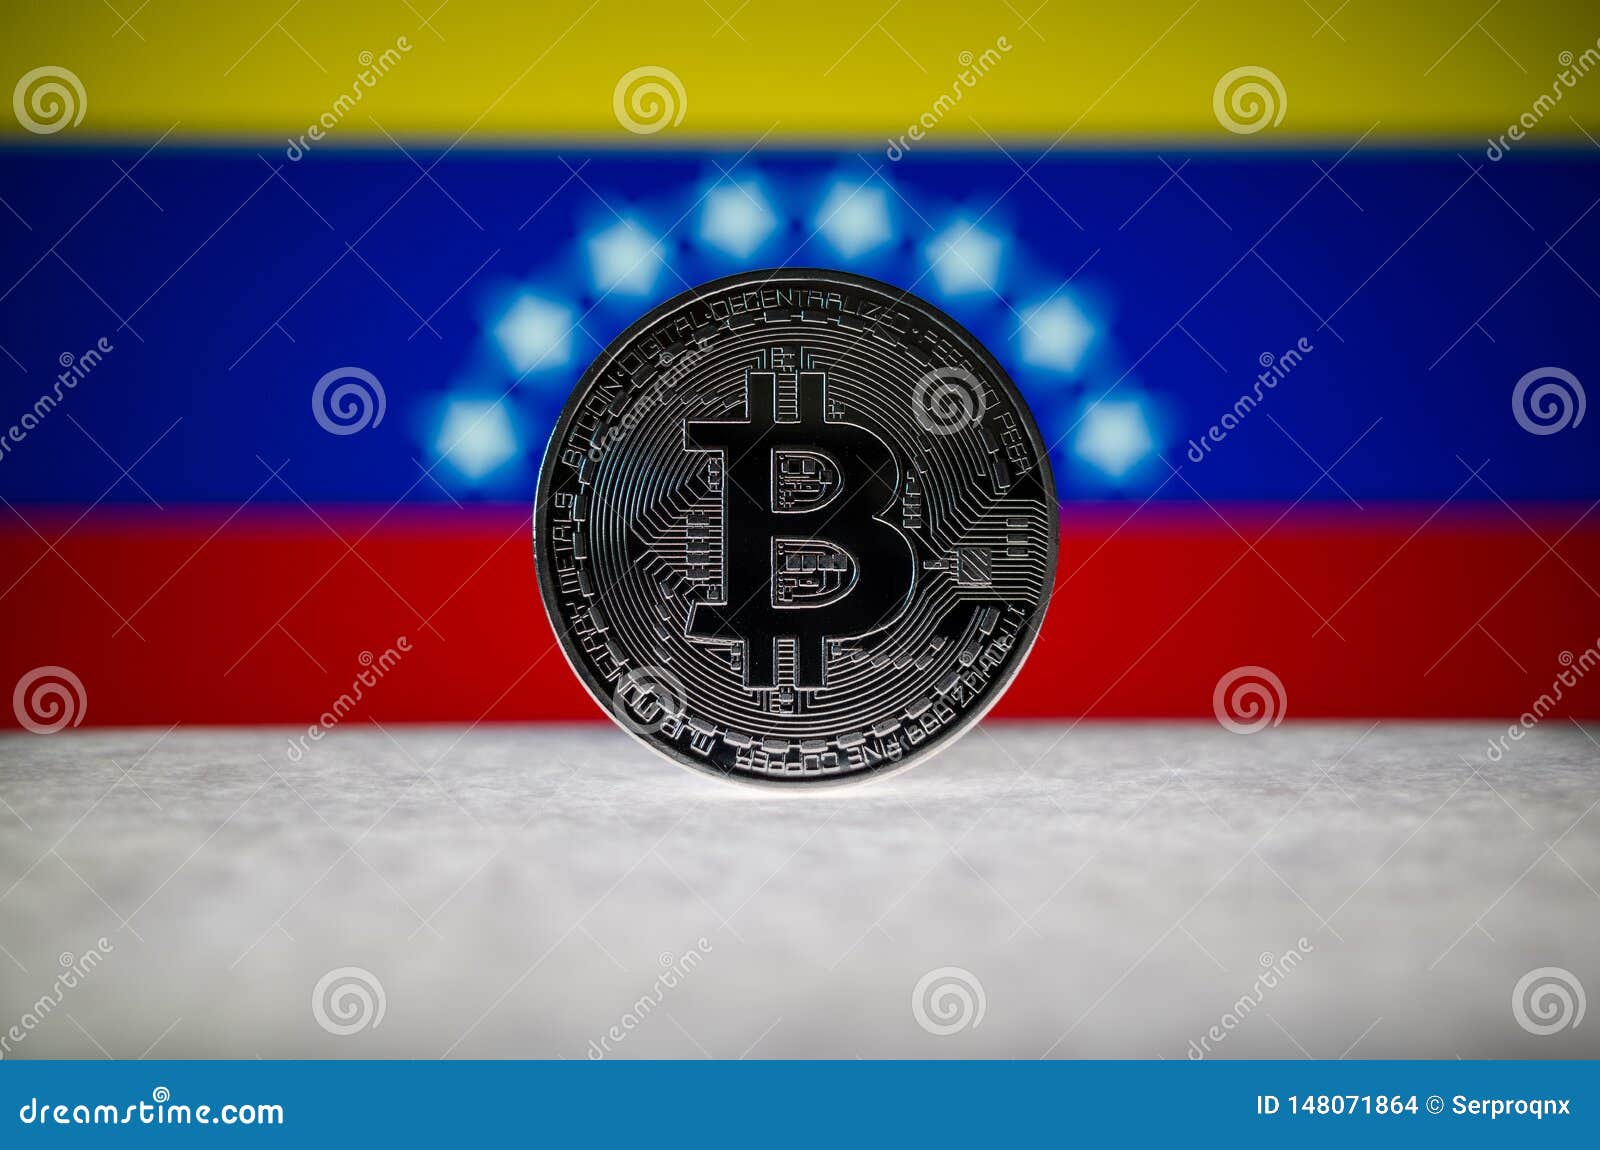 Venezuelan btc app to buy shiba crypto